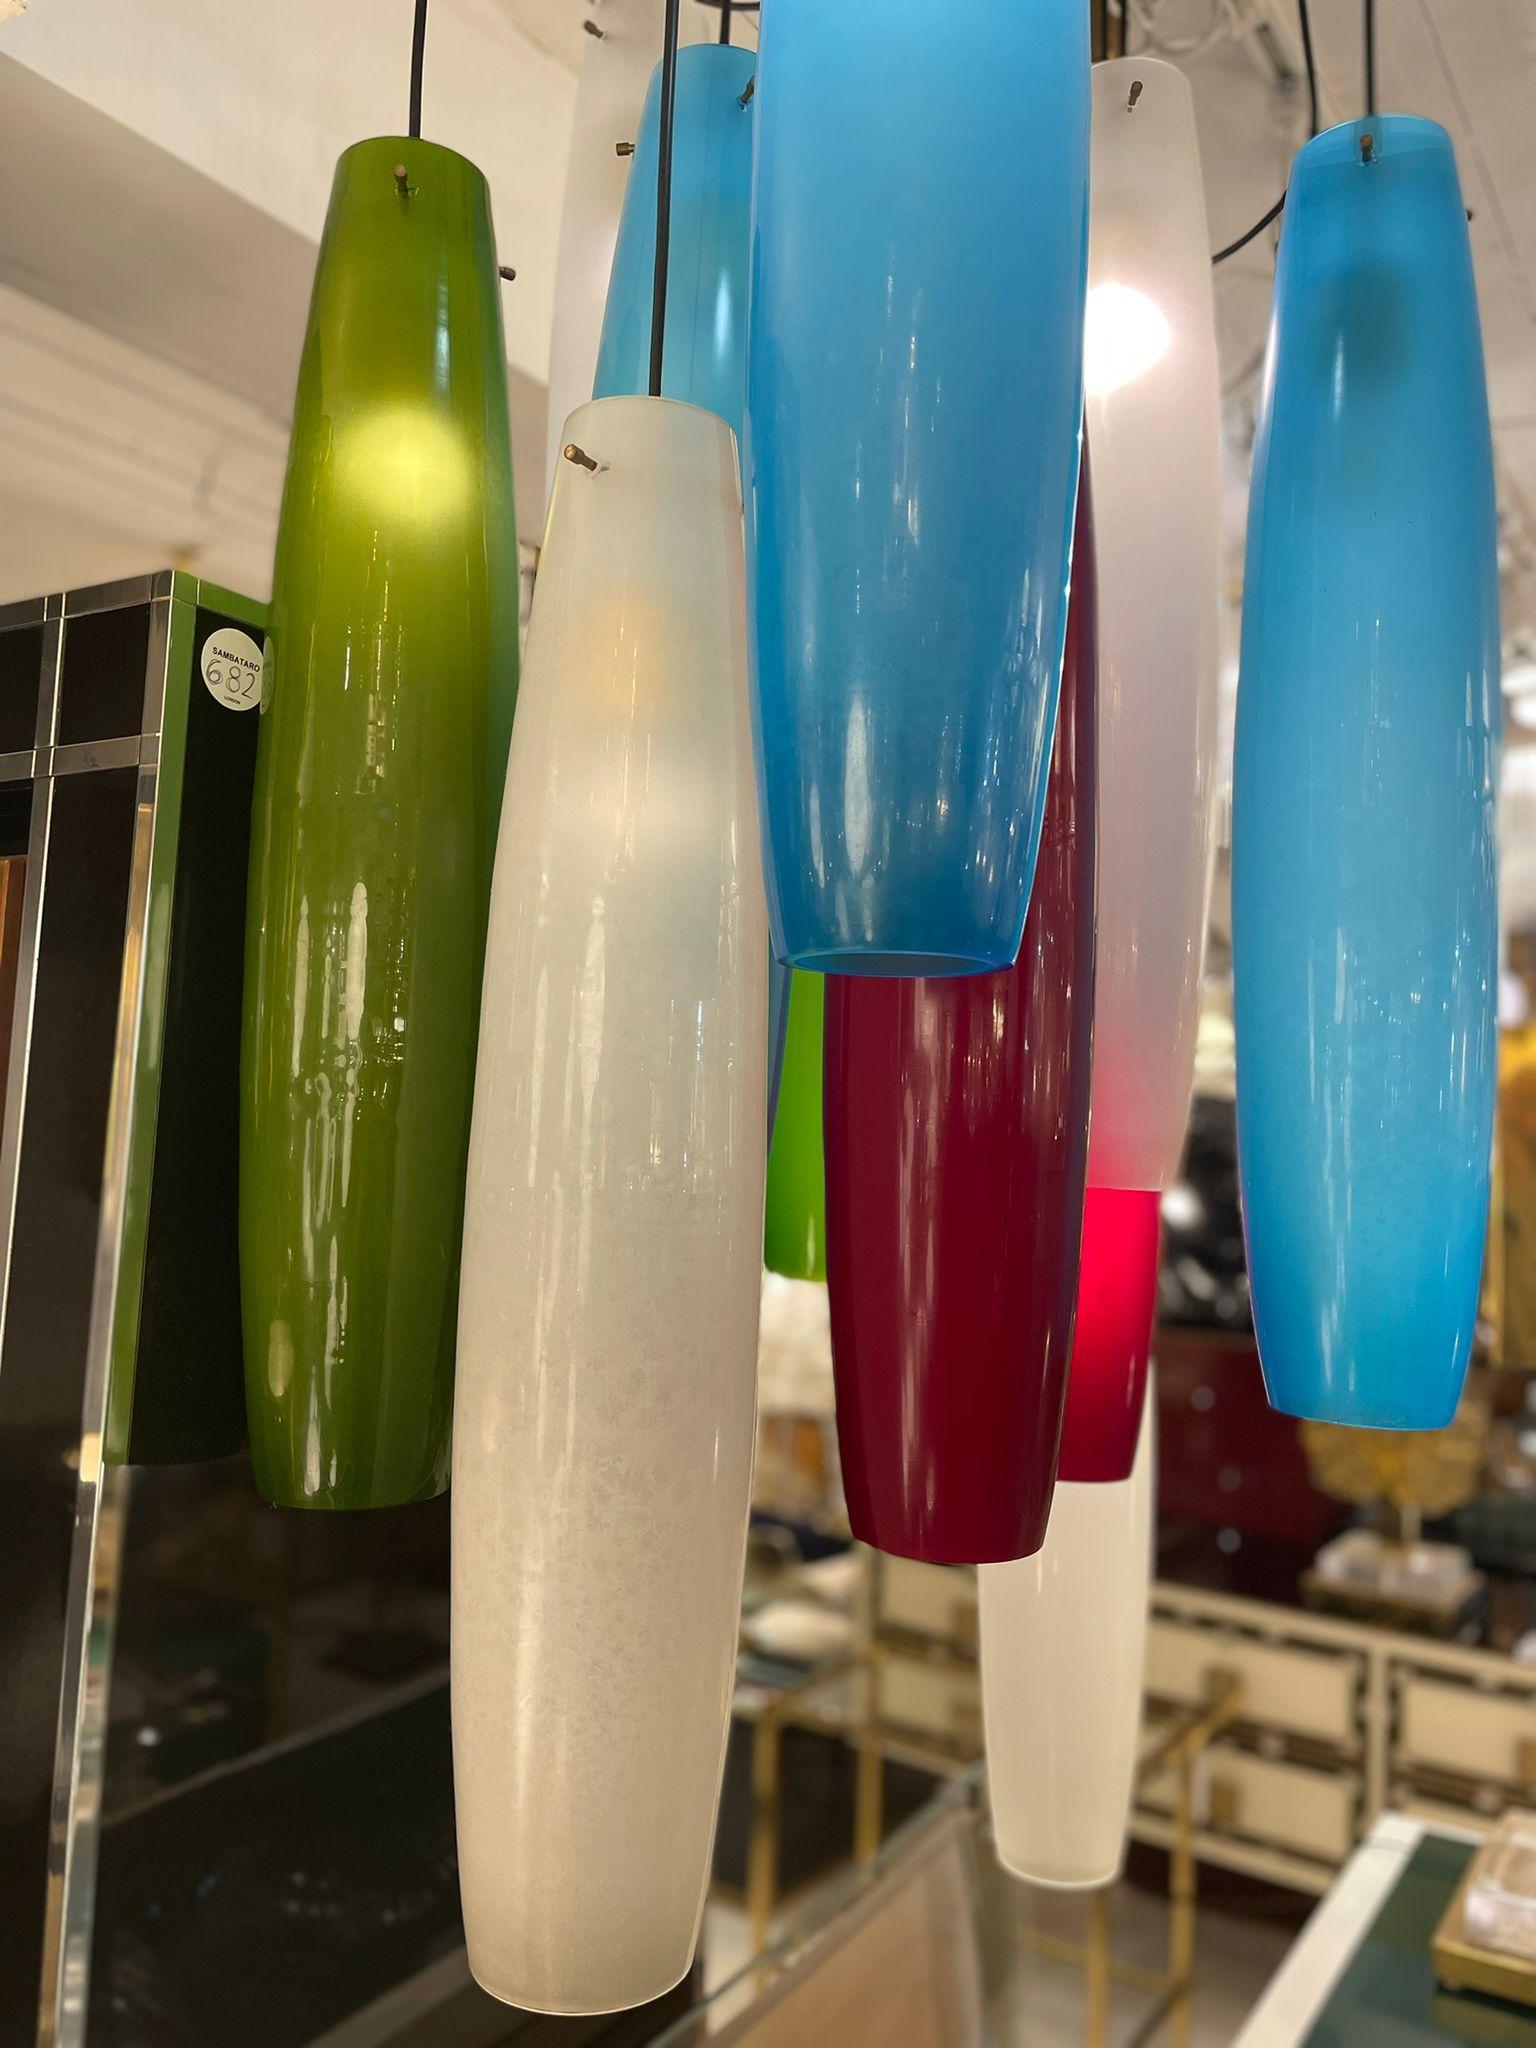 Fabuleuses suspensions de plafond de forme convexe en verre de Murano de différentes couleurs avec 3 points de suspension en laiton, attribuées à Pianon, vers les années 1950.

Les articles peuvent être vendus individuellement. 